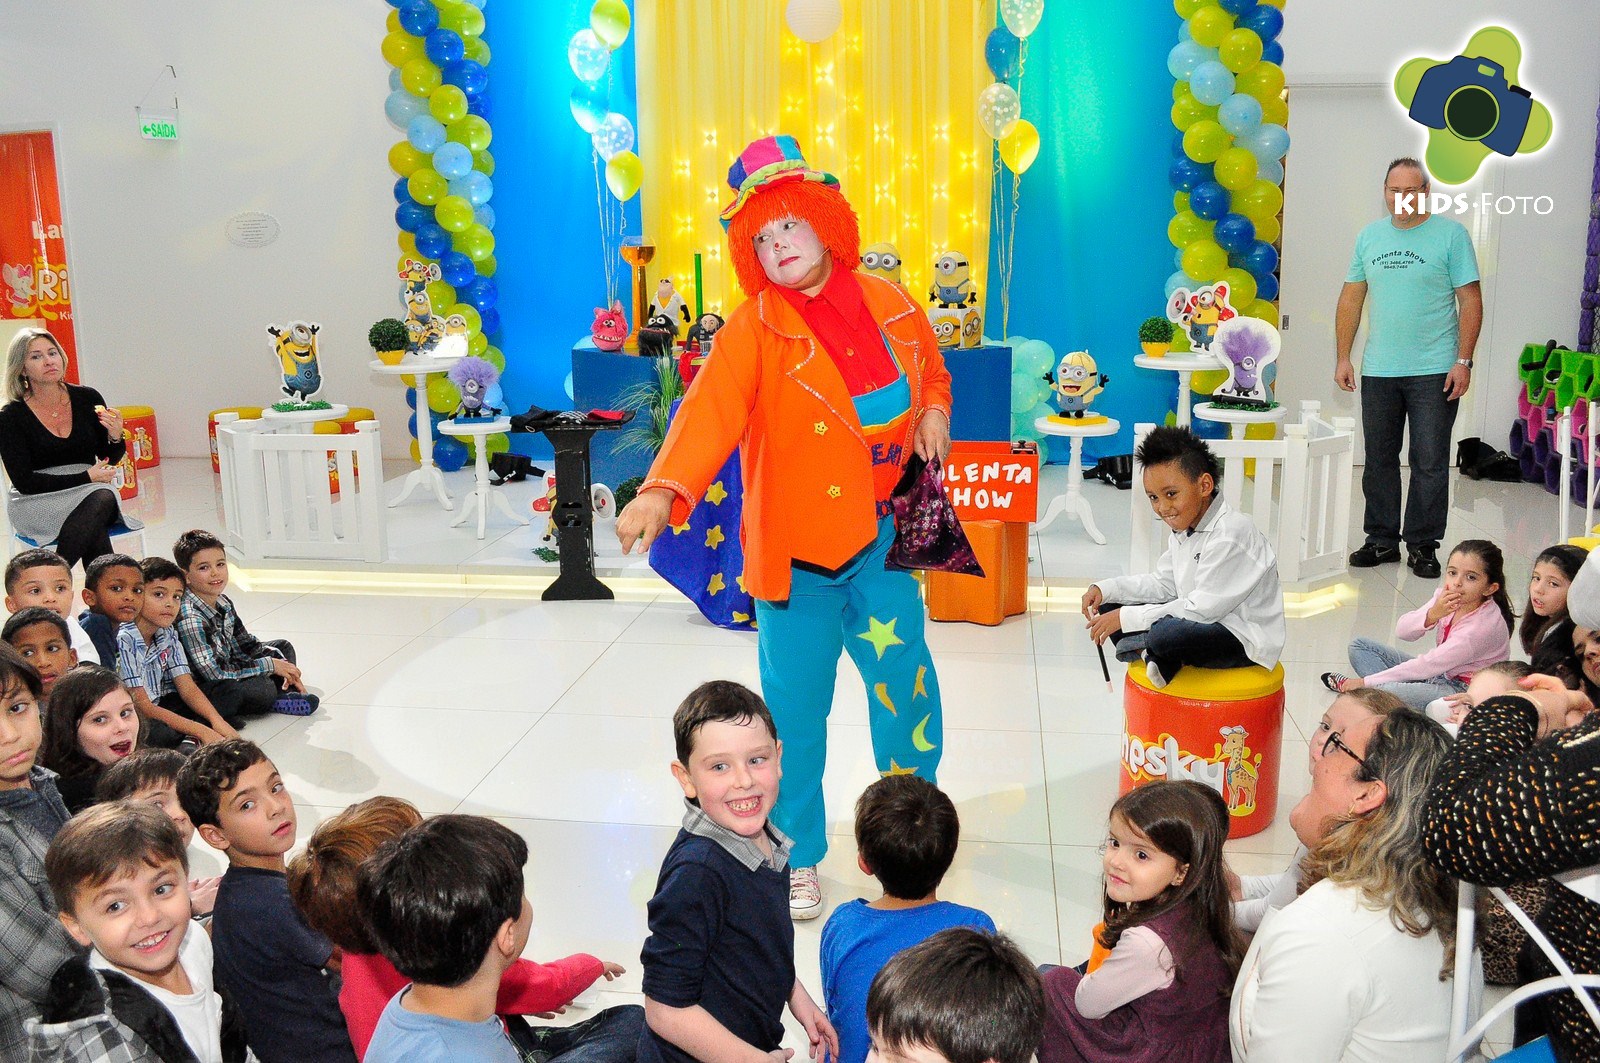 Festa de aniversário de 8 anos do Pedrinho, realizada na Richesky Kids e Teens, por Kids Foto